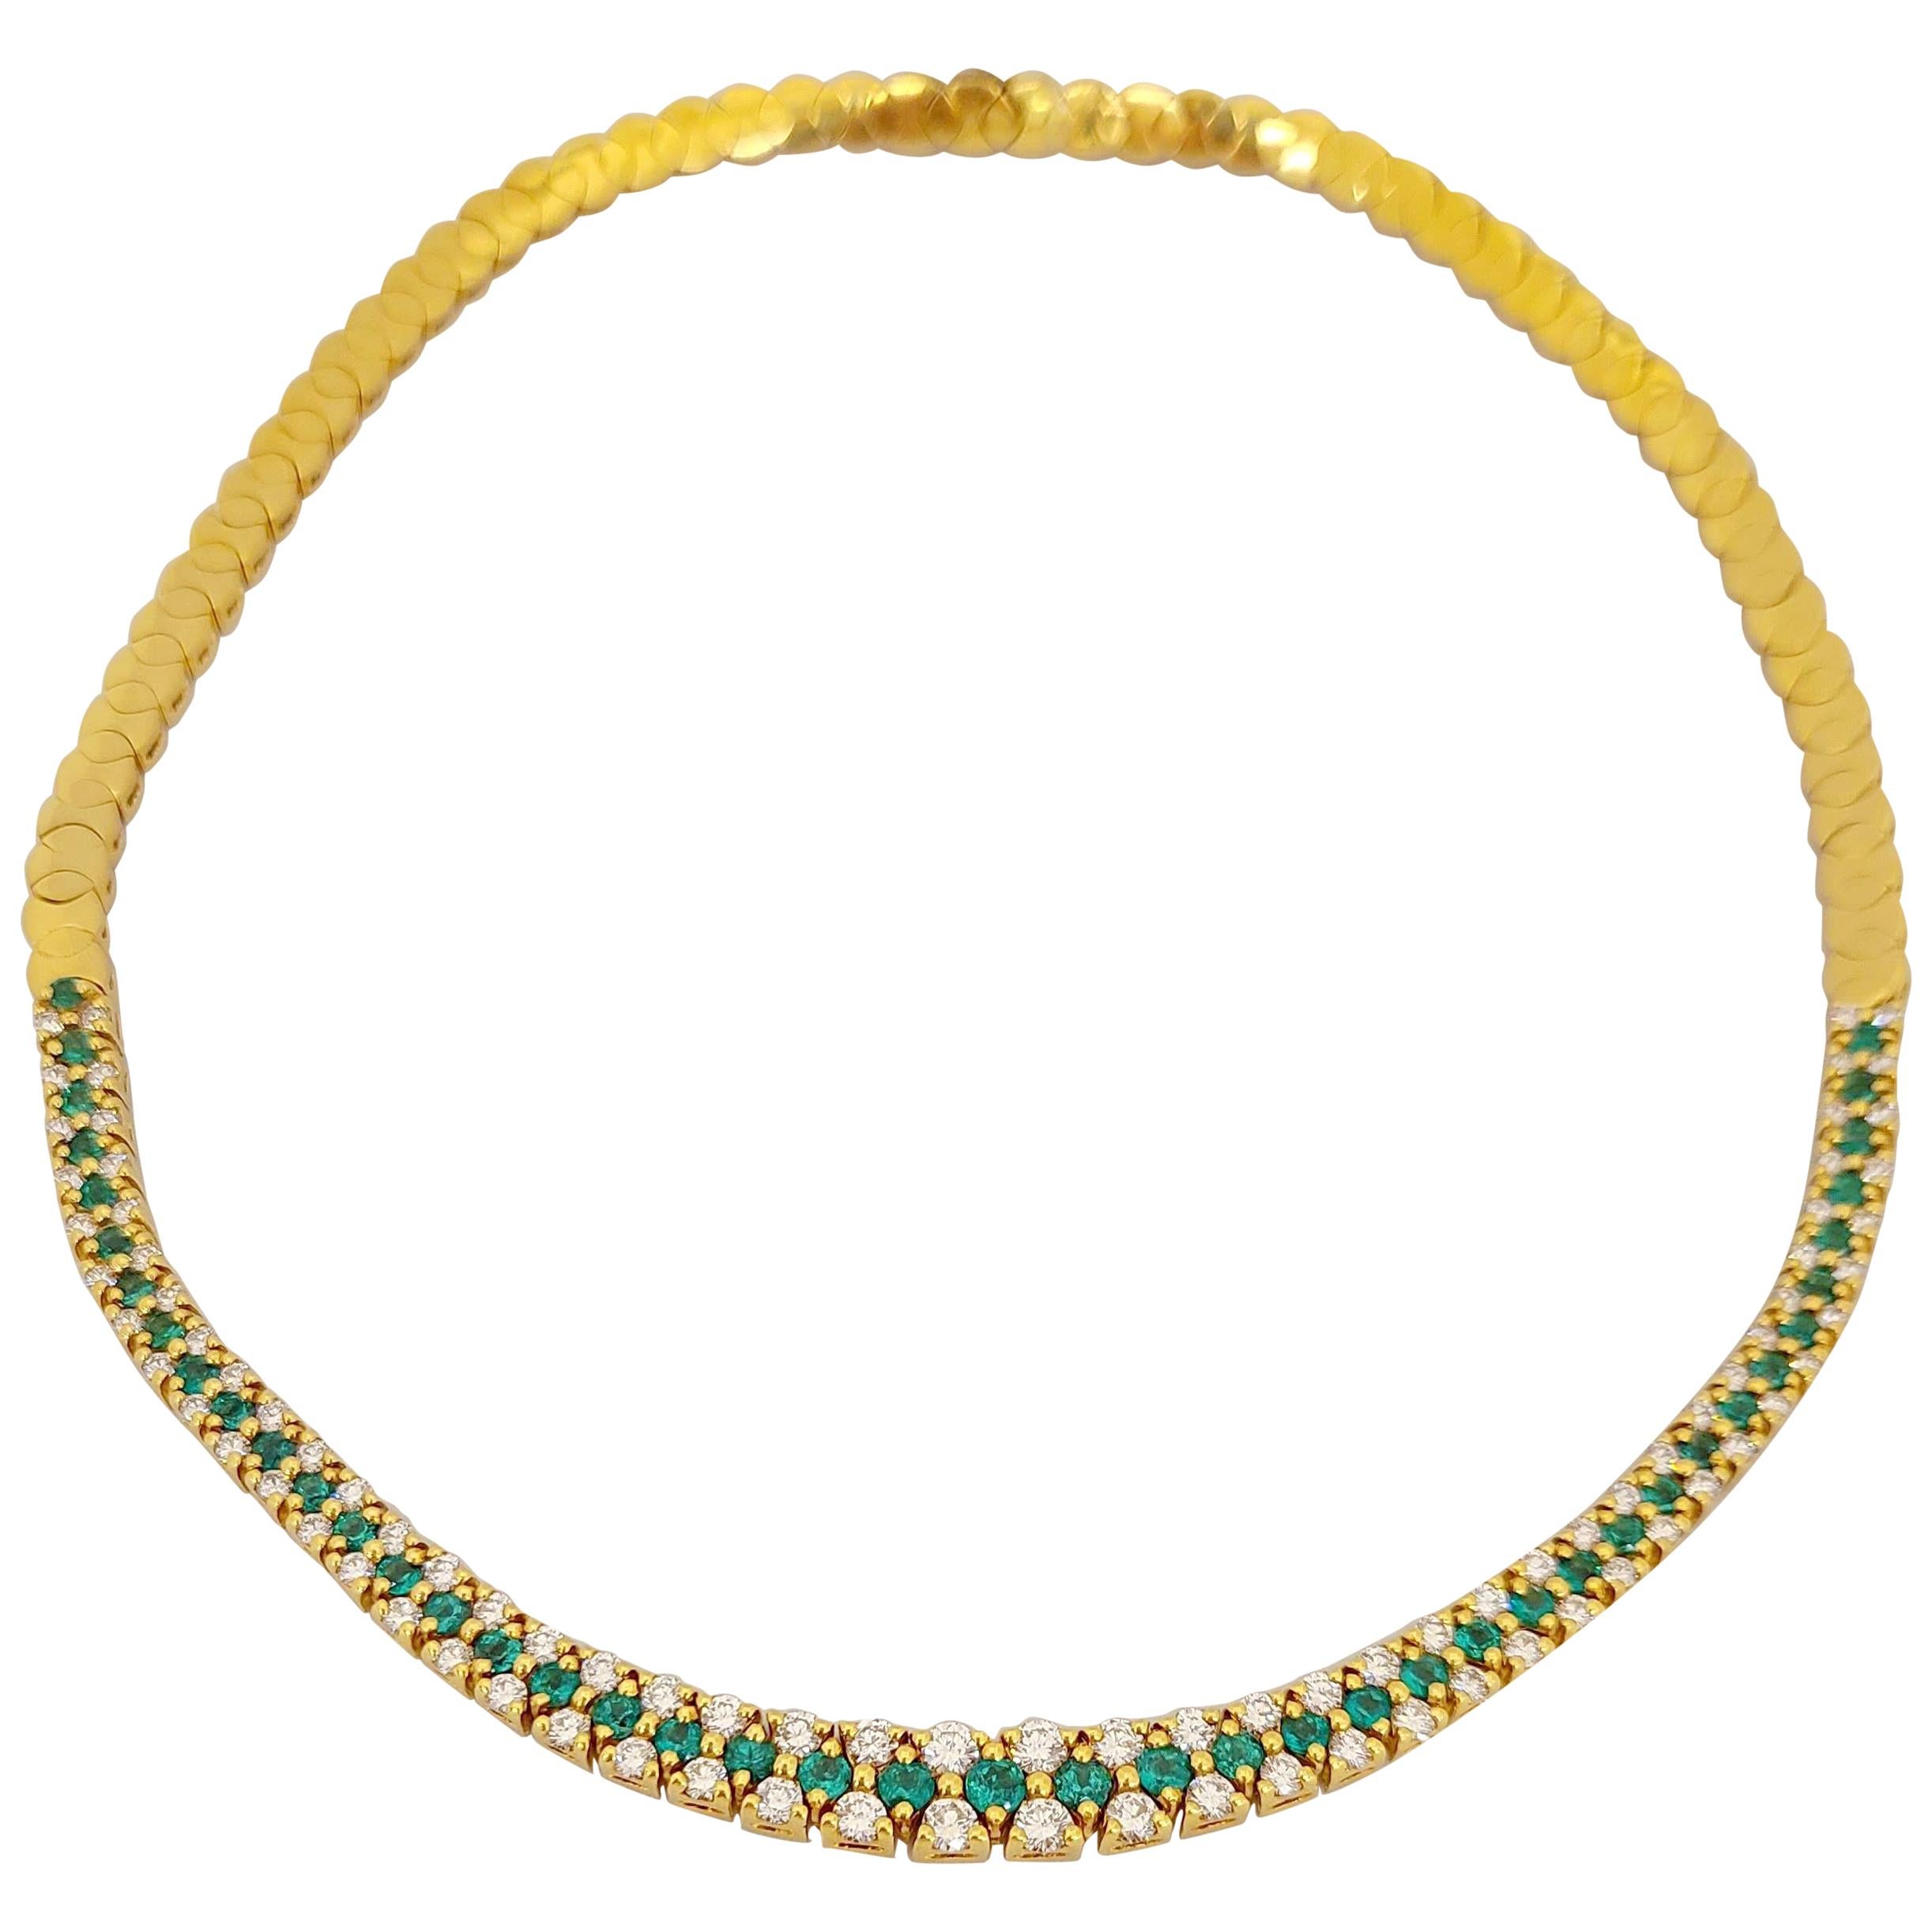 18 Karat Gold 3.68 Carat Emerald and 4.31 Carat Diamond Necklace and Bracelet